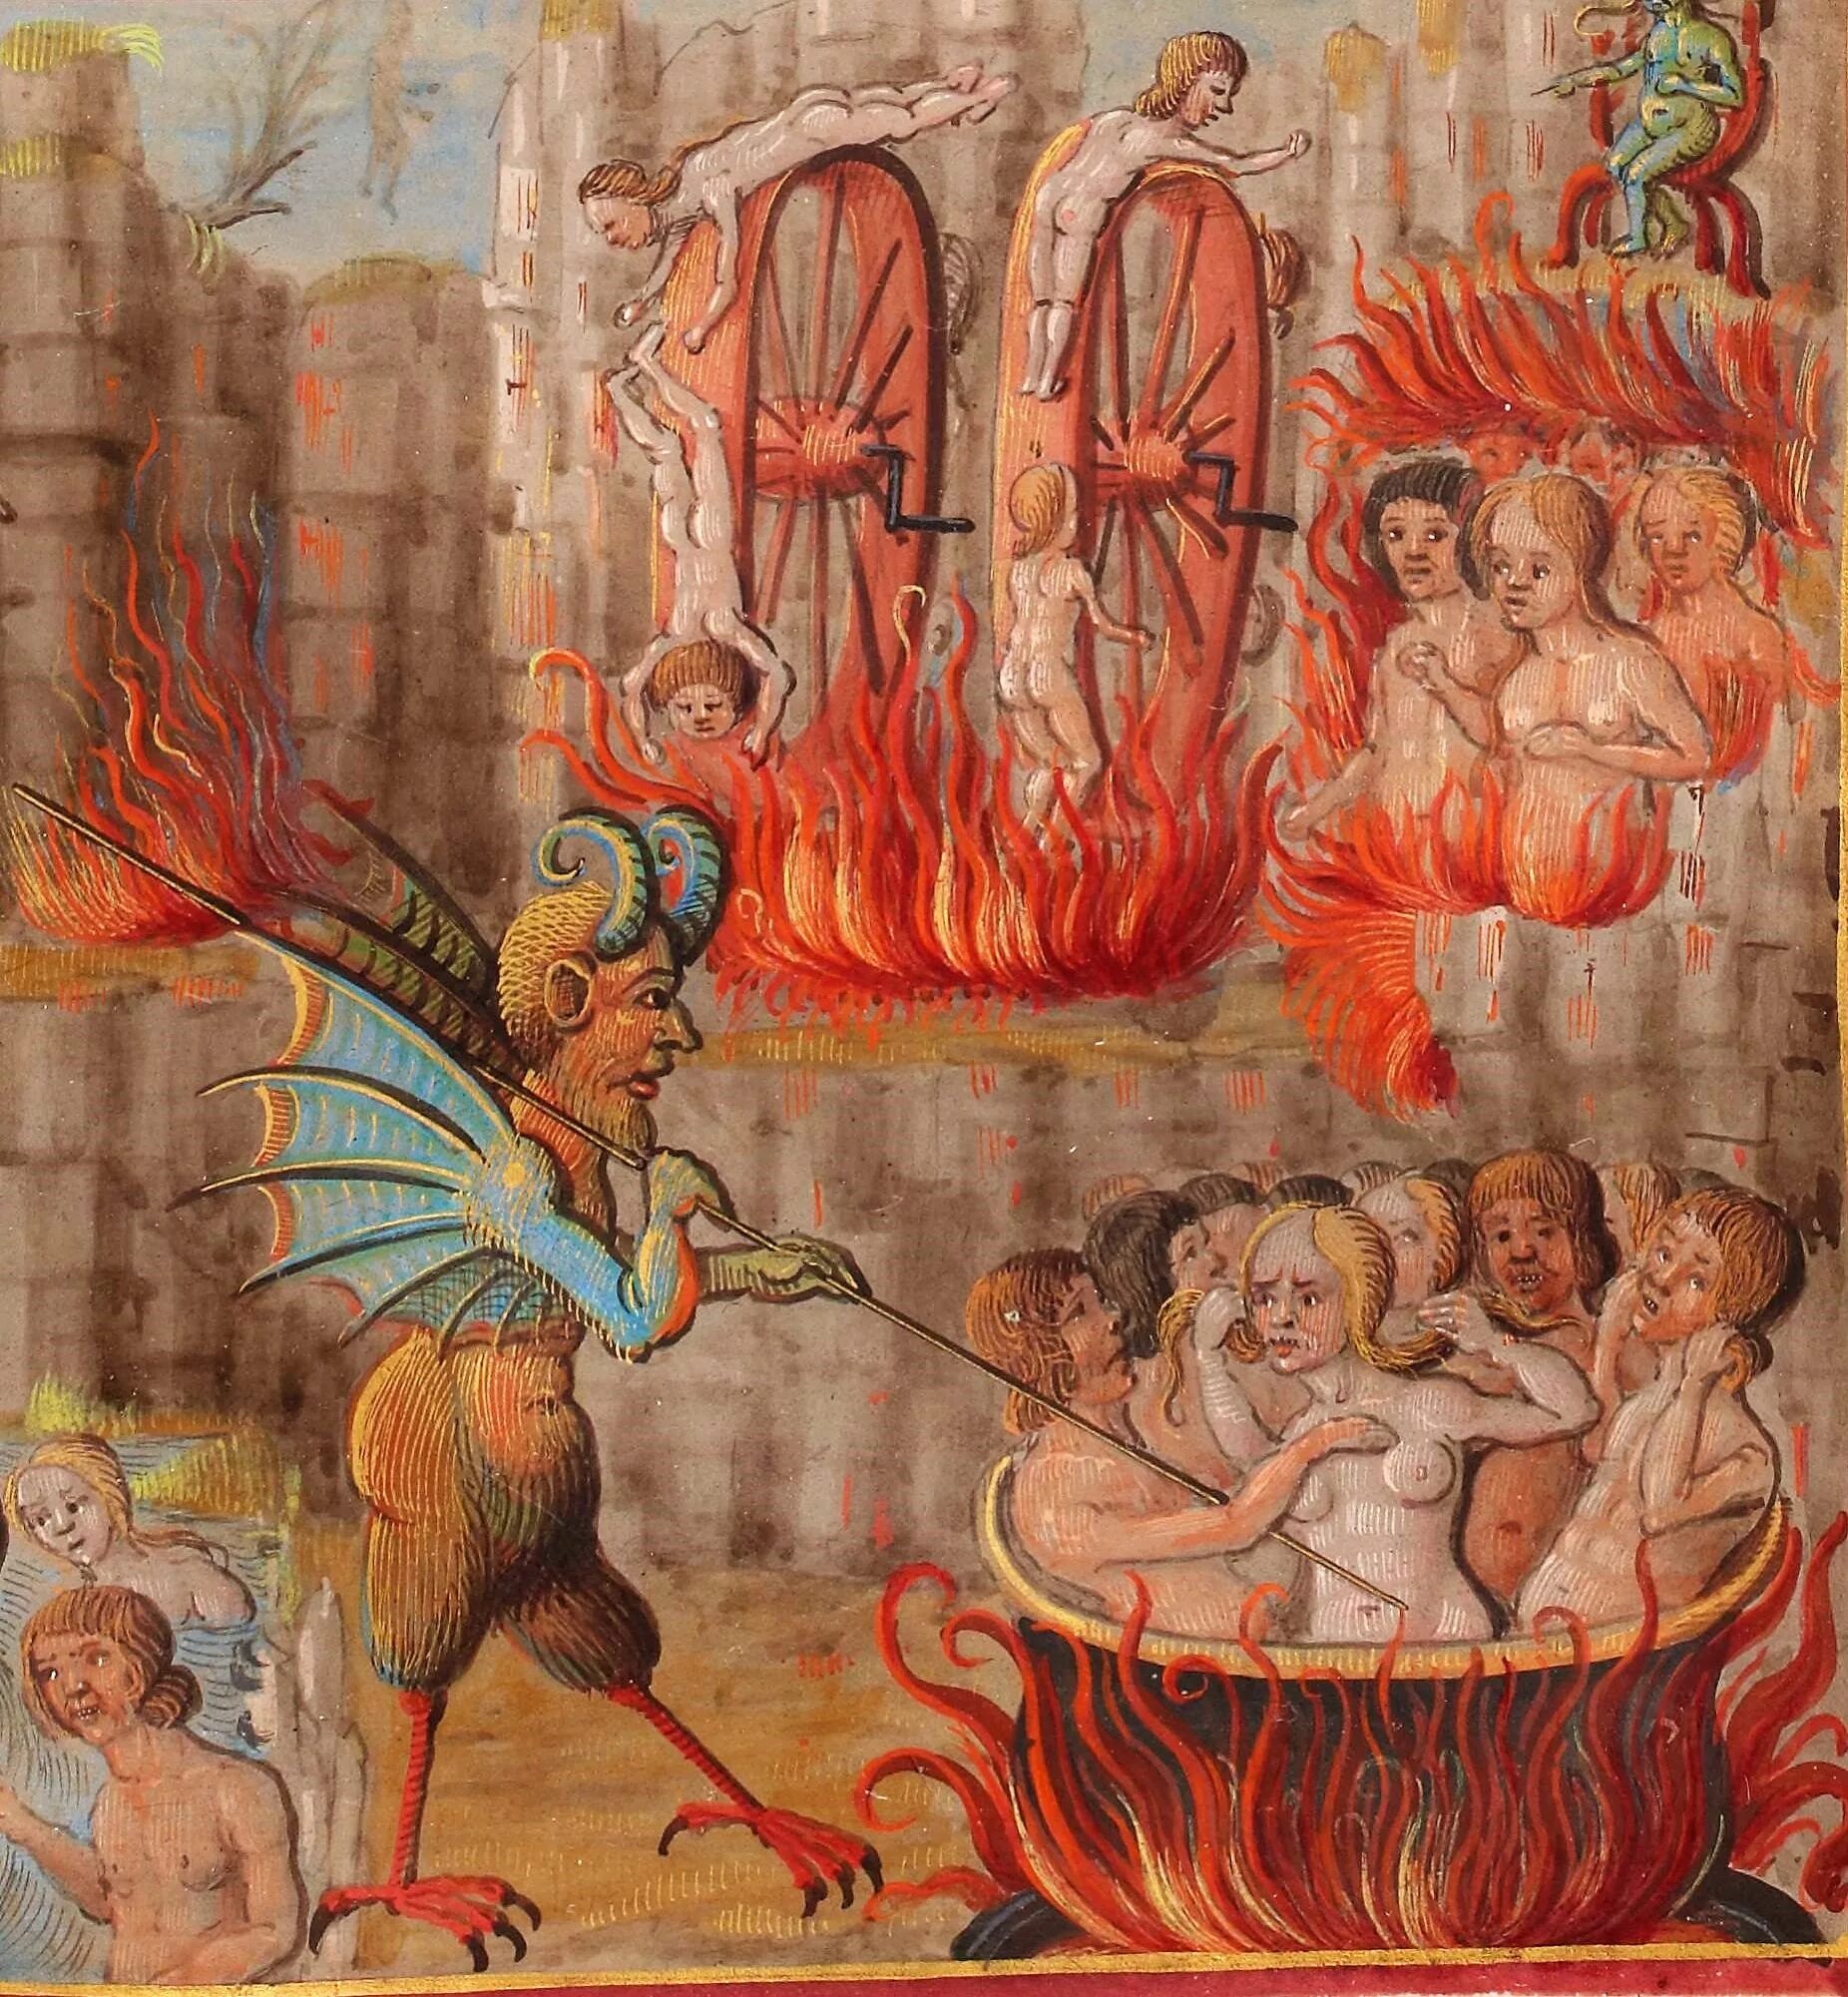 Огненная для грешников 6 букв. Муки ада в средневековой миниатюре.. Картина "мучения ада" Босх. Фреска Джованни да Модена ад.